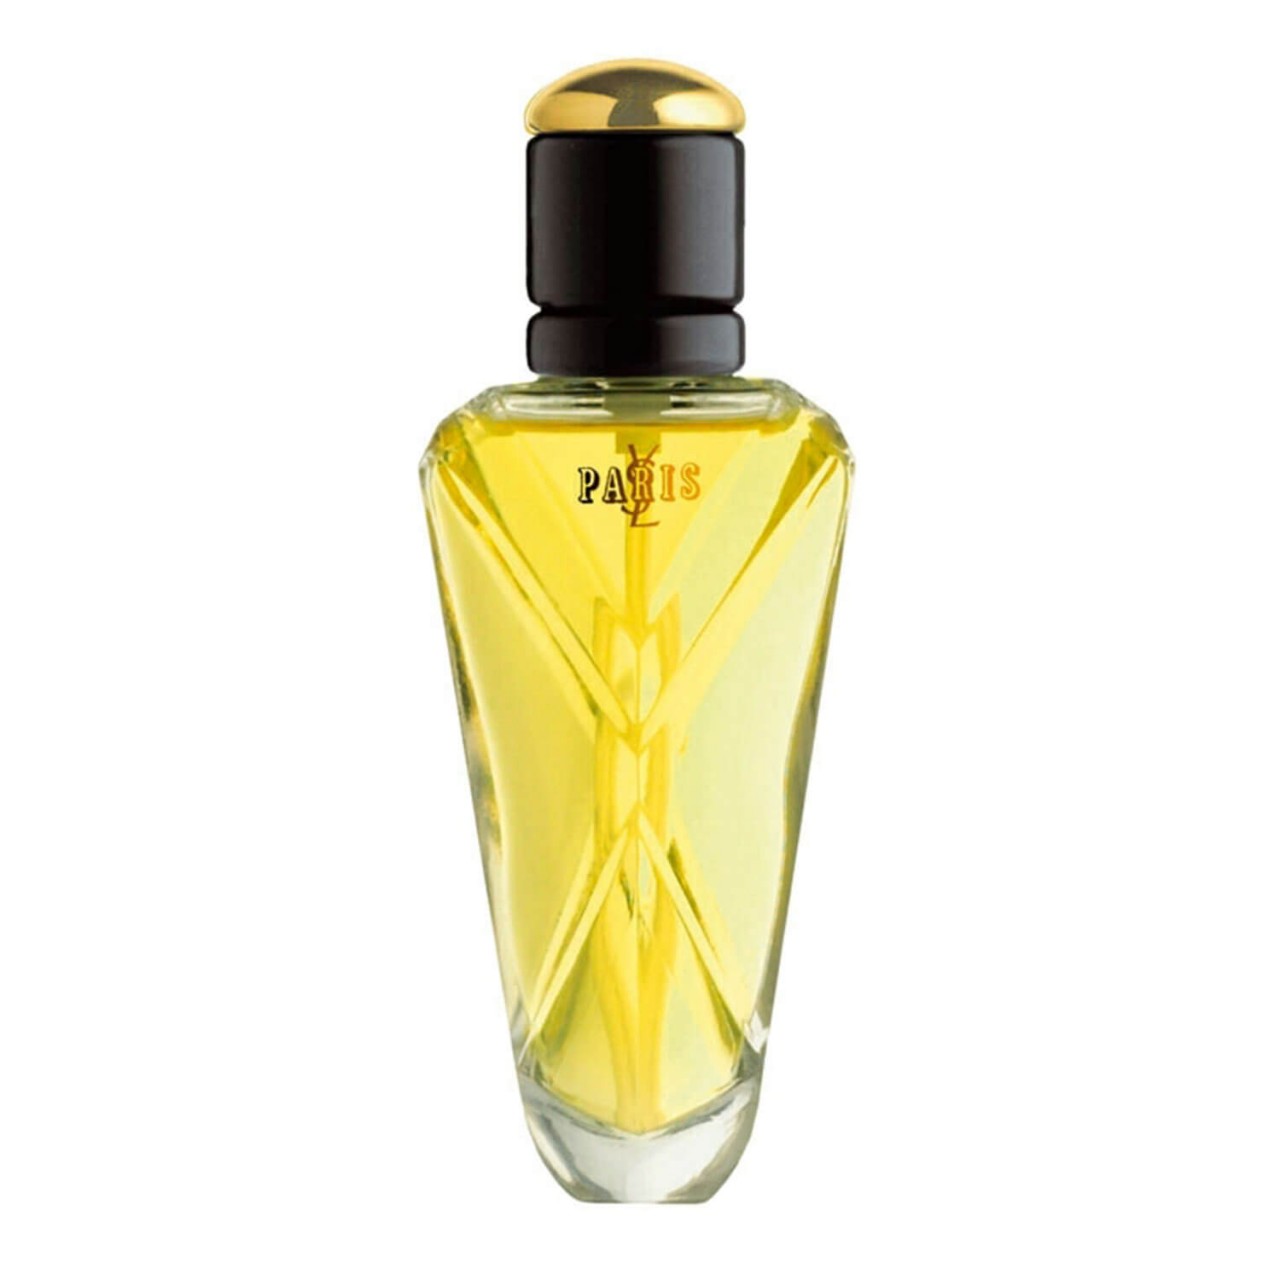 YSL Paris - Eau de Parfum von Yves Saint Laurent